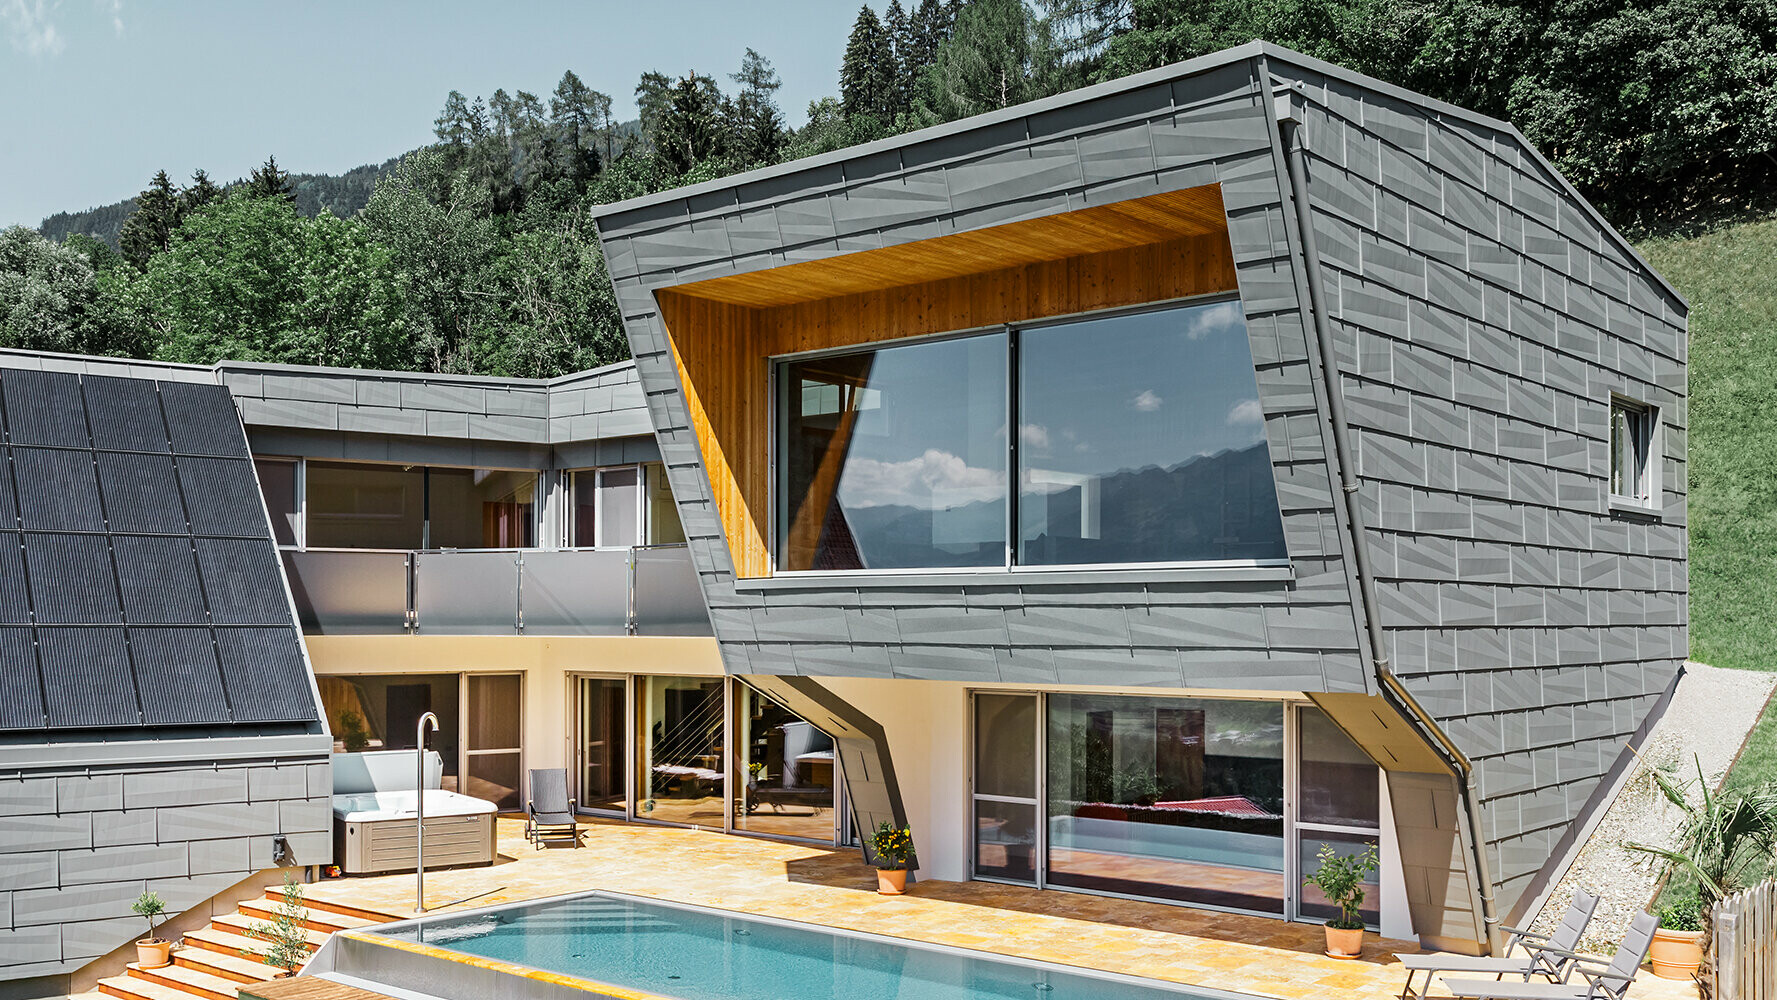 Modernes Einfamilienhaus mit PREFA Dach- und Fassadenpaneel FX.12 in P.10 Hellgrau